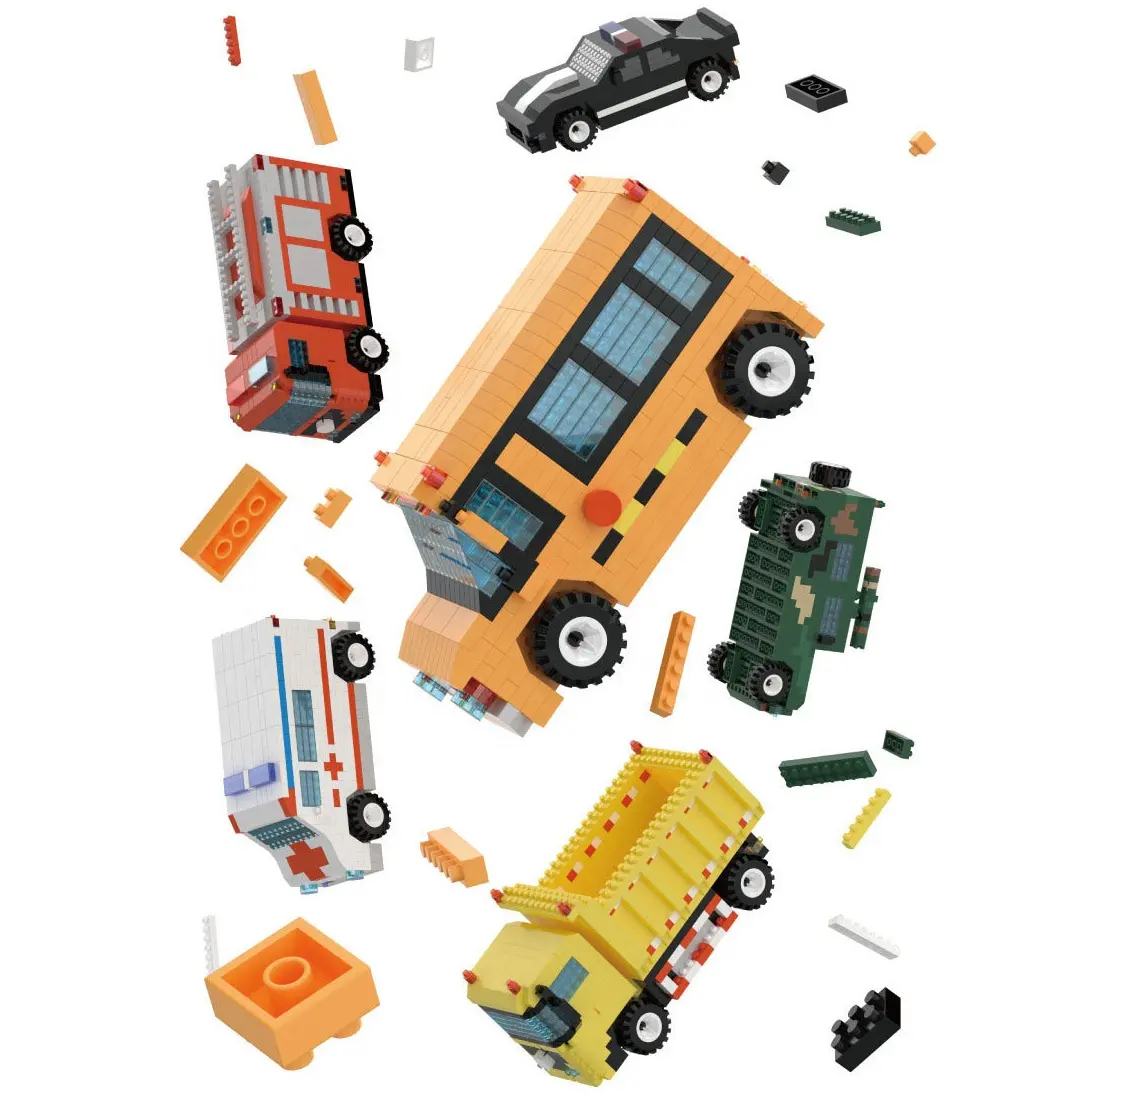 Novo mini bloco de construção de carro da série, modelo de caminhão, ônibus escolar, caminhão, ambulância, micro tijolos, brinquedo de bloco de construção